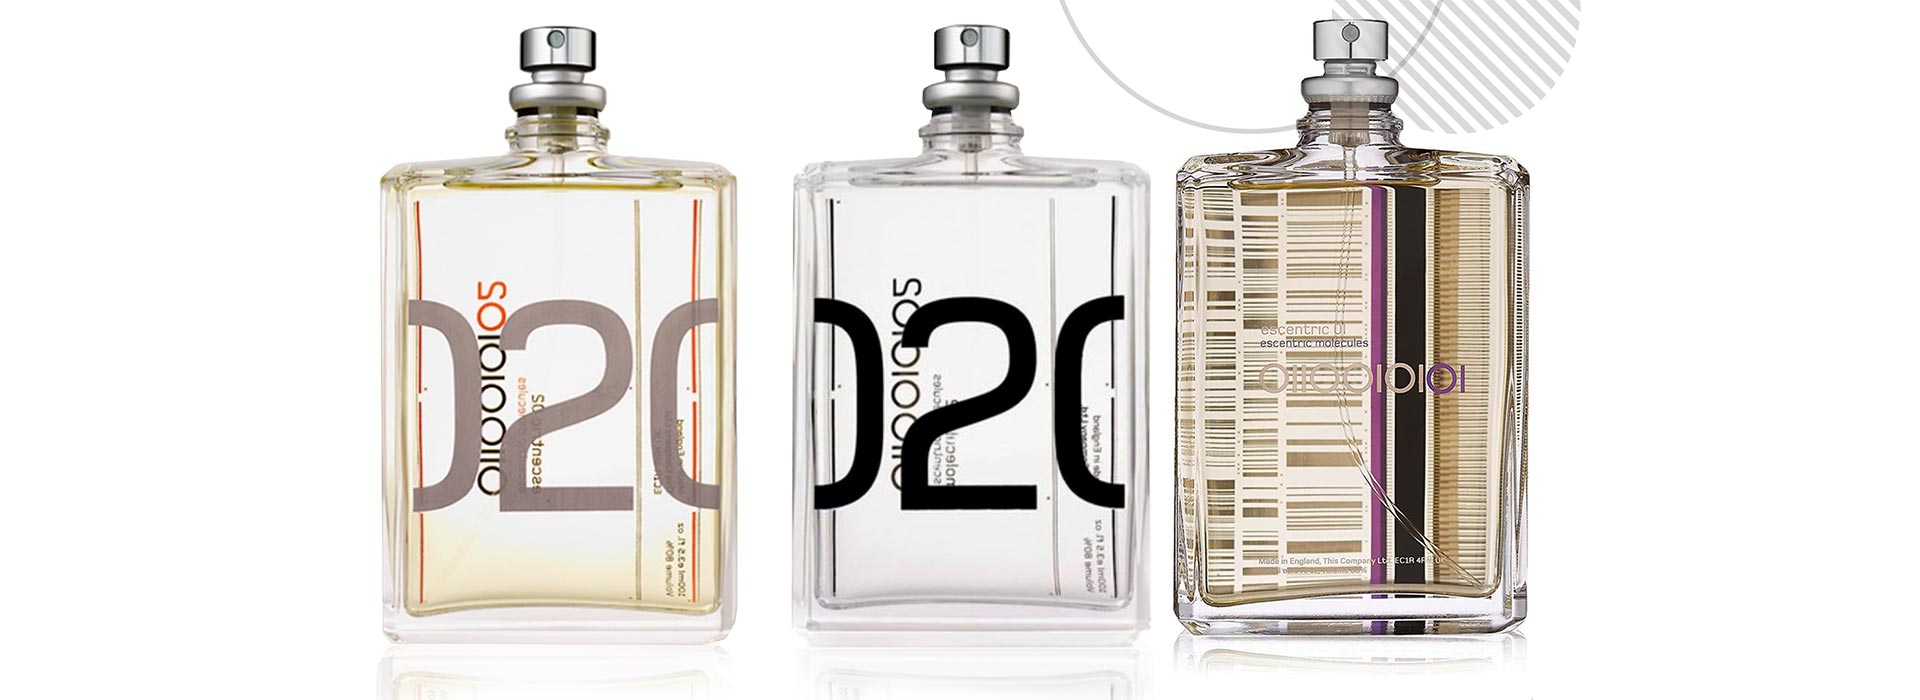 A Wheaton desenvolveu um frasco exclusivo para a linha de perfumes da marca britânica Escentric Molecules.